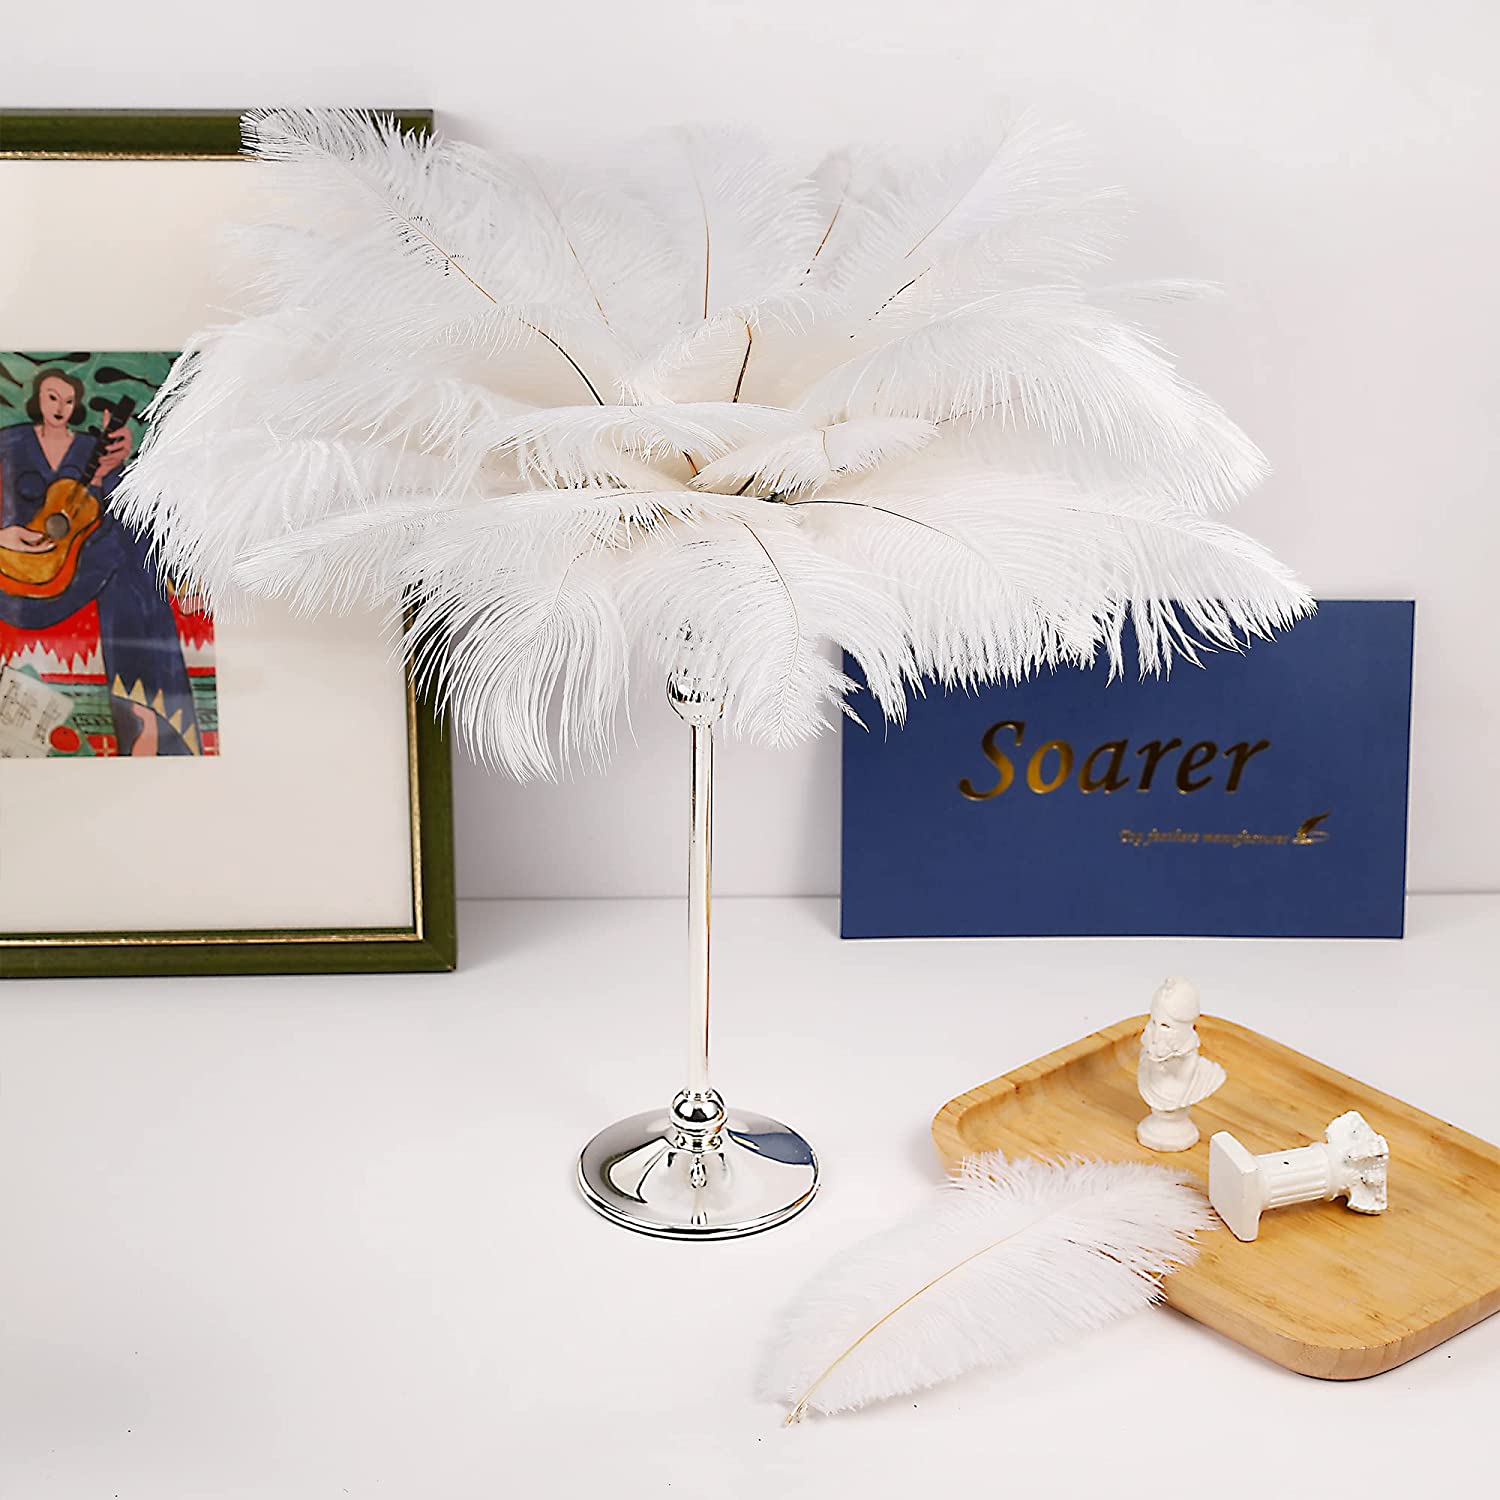 Pluma de avestruz verde de 5.9-27.6 in, 10-200 plumas de bricolaje para  manualidades, fiesta de Navidad, boda, decoración de vestidos de boda